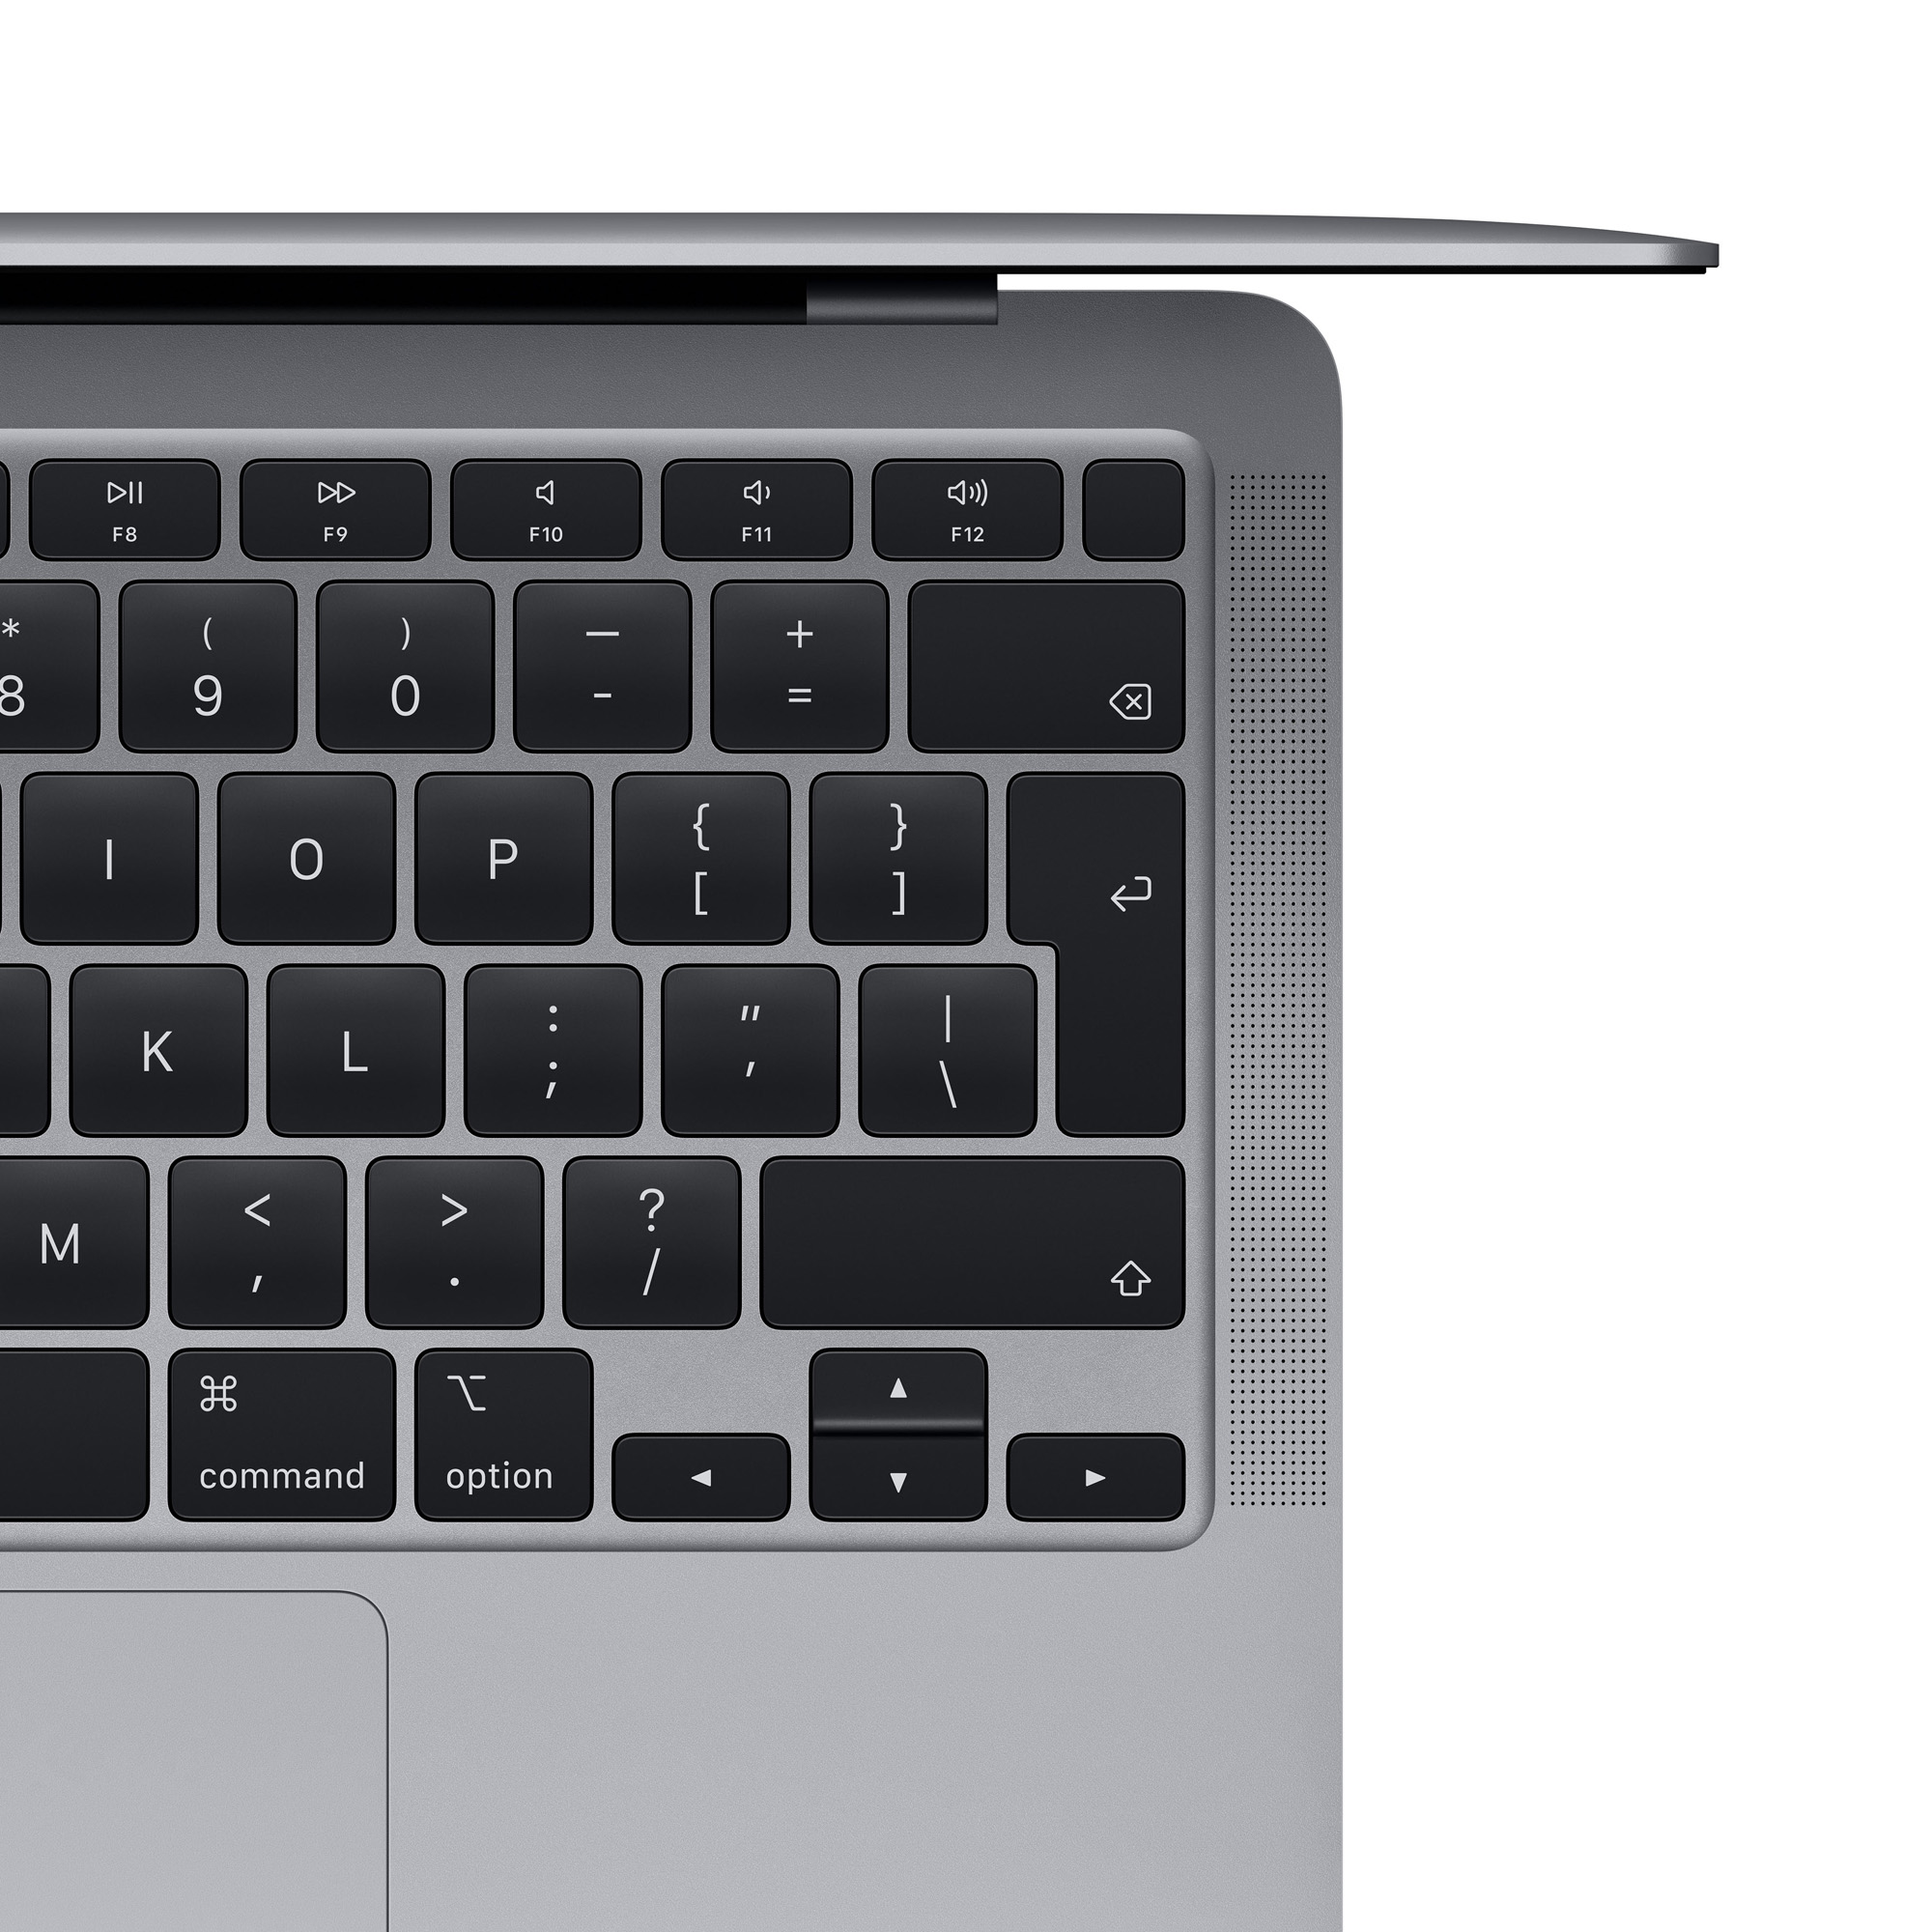 Notebook Apple MacBook Air 13.3